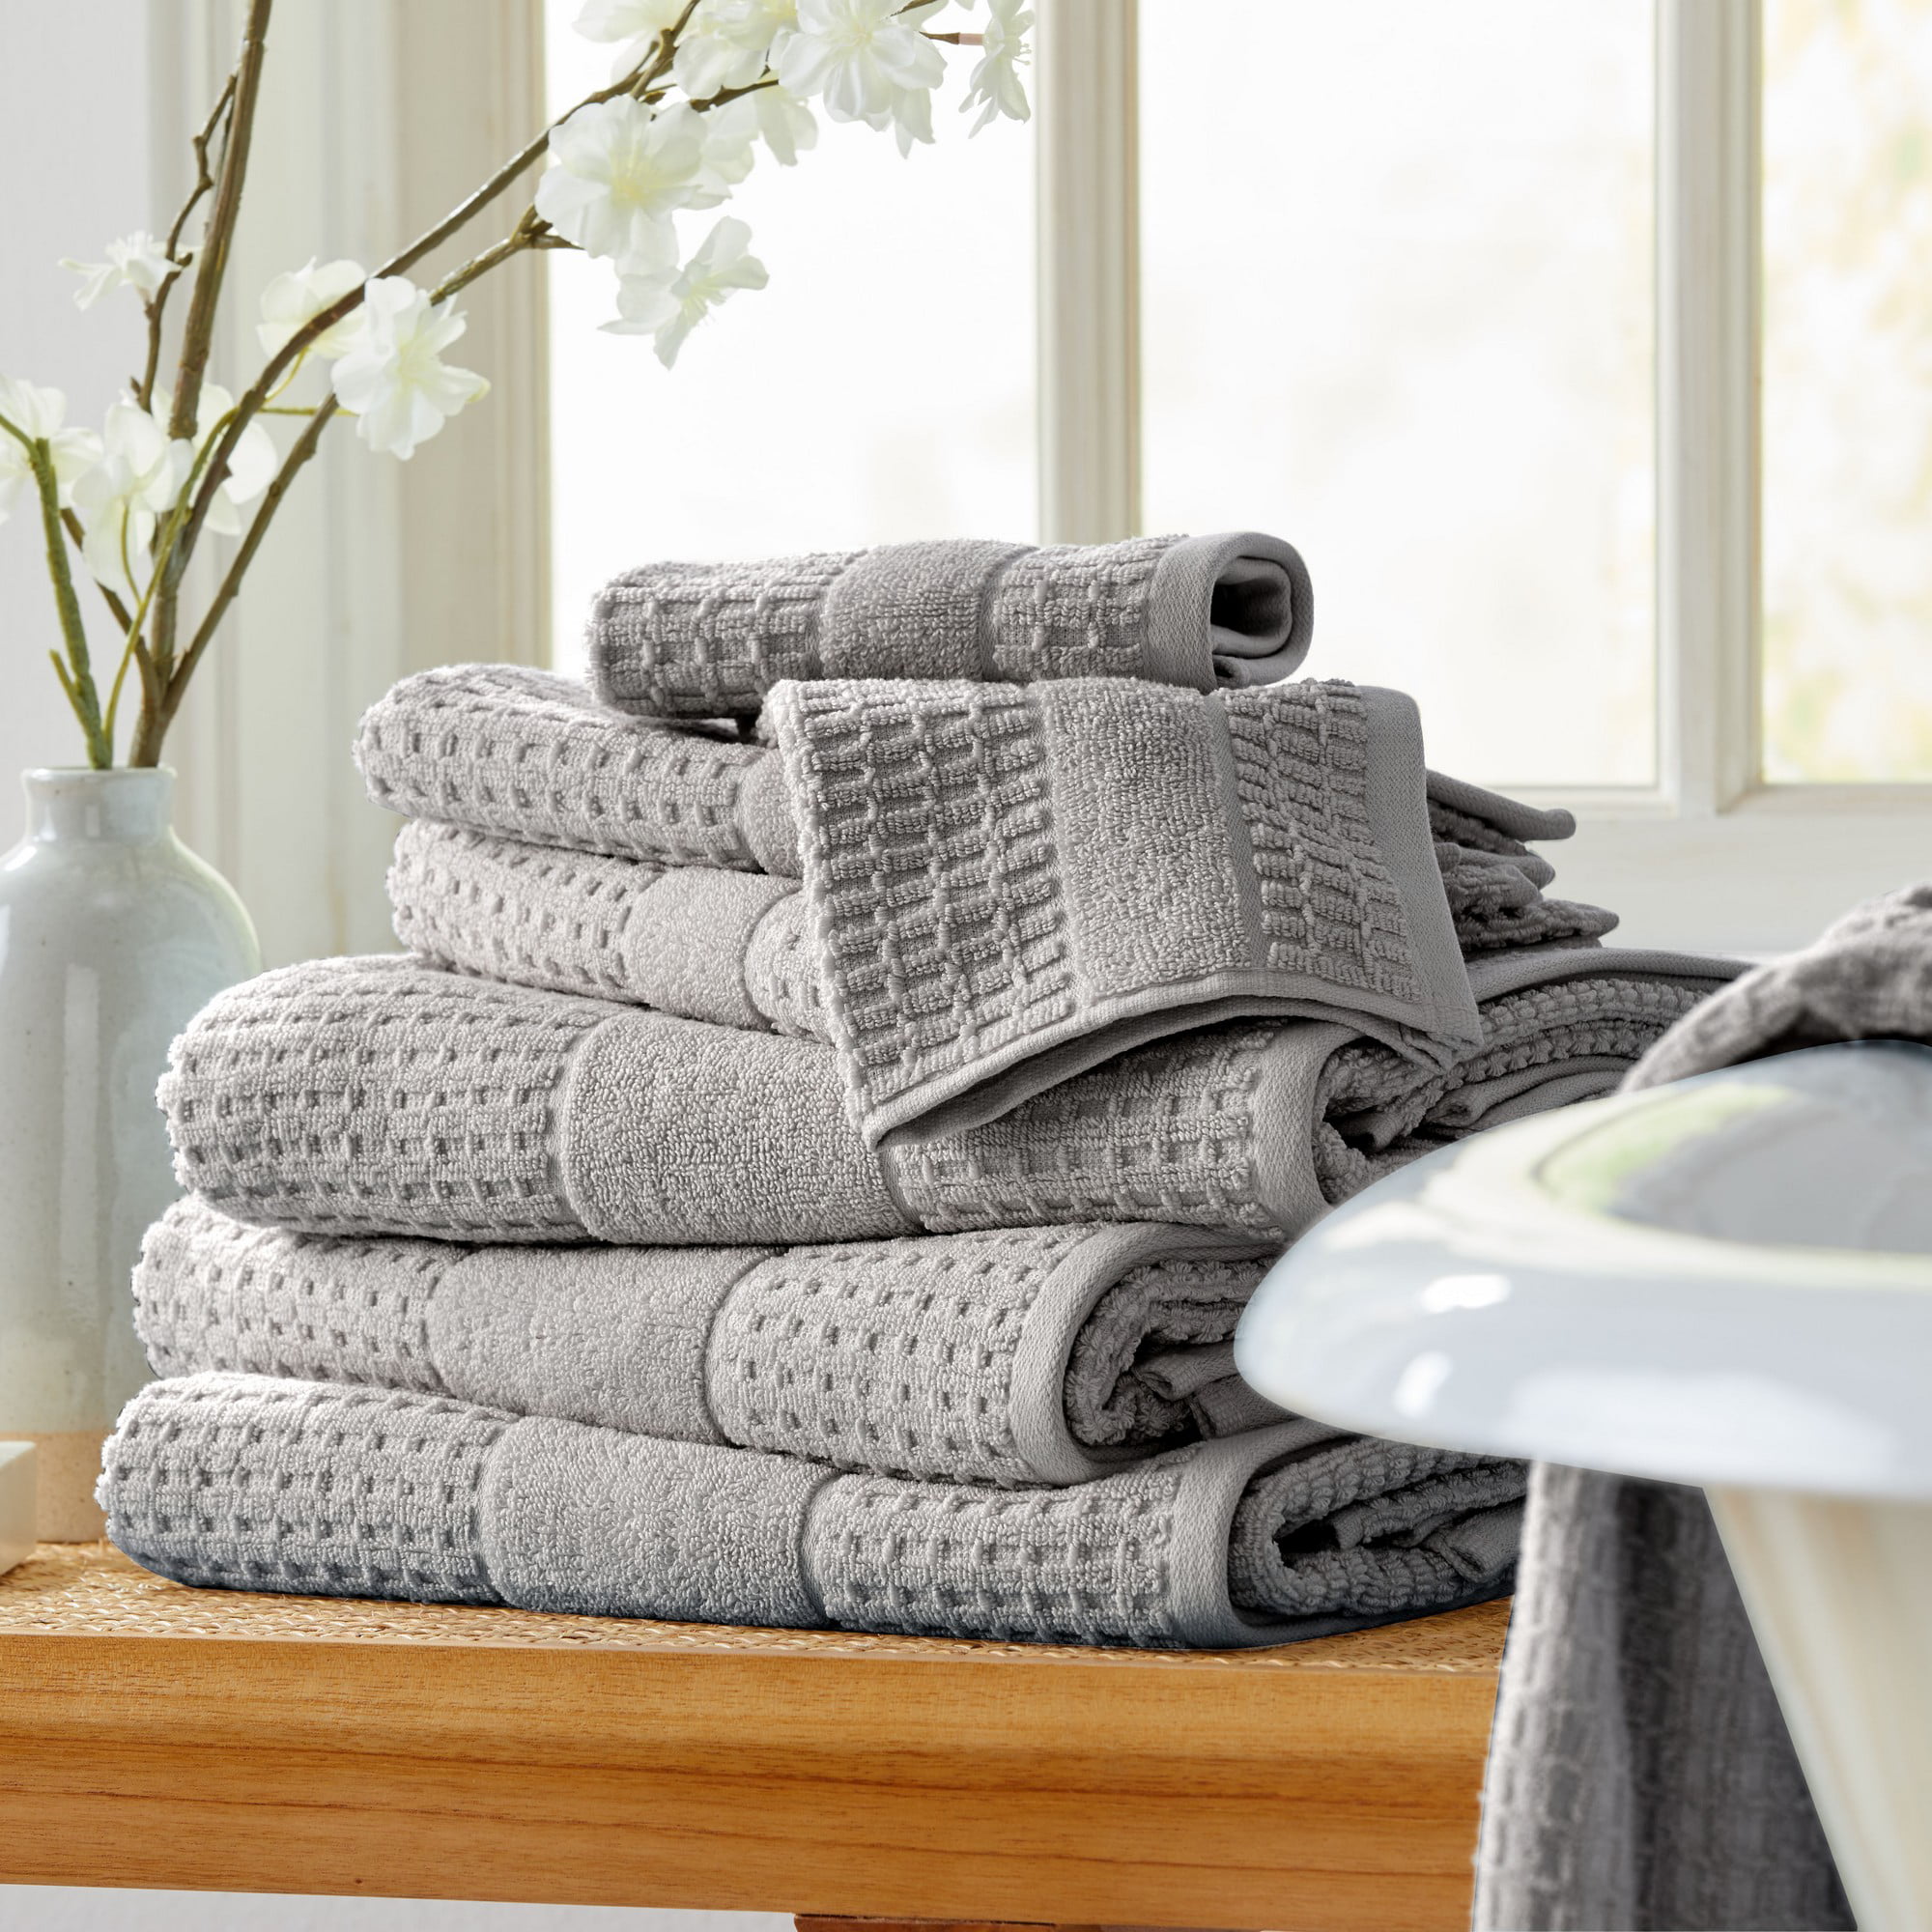 LANE LINEN 100% Cotton Bath Towels for Bathroom Set-Space Grey Bath Towel  Set